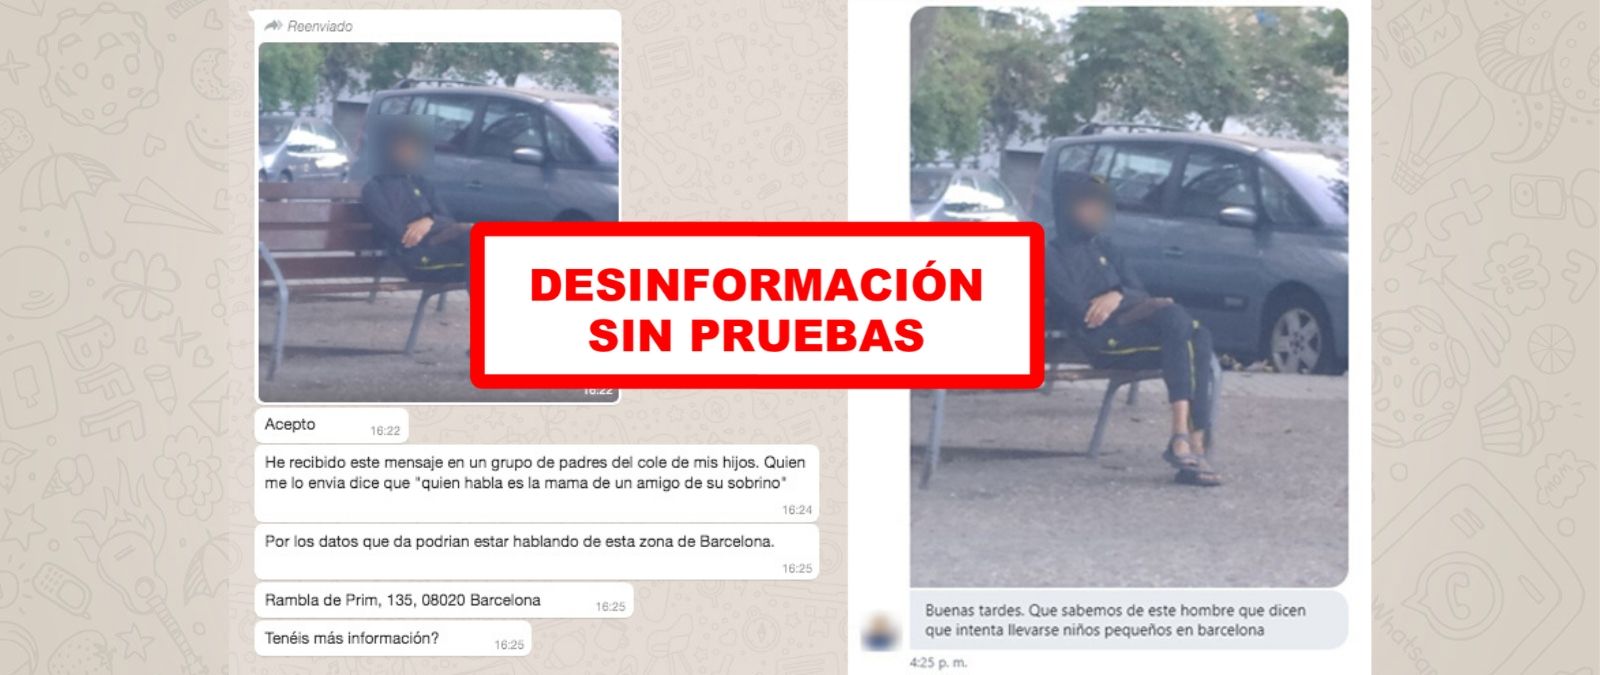 No, no hay pruebas de que un hombre haya intentado secuestrar niños en el  distrito de Sant Martí o en Sant Adrià del Besòs (Barcelona)* ·   - Periodismo para que no